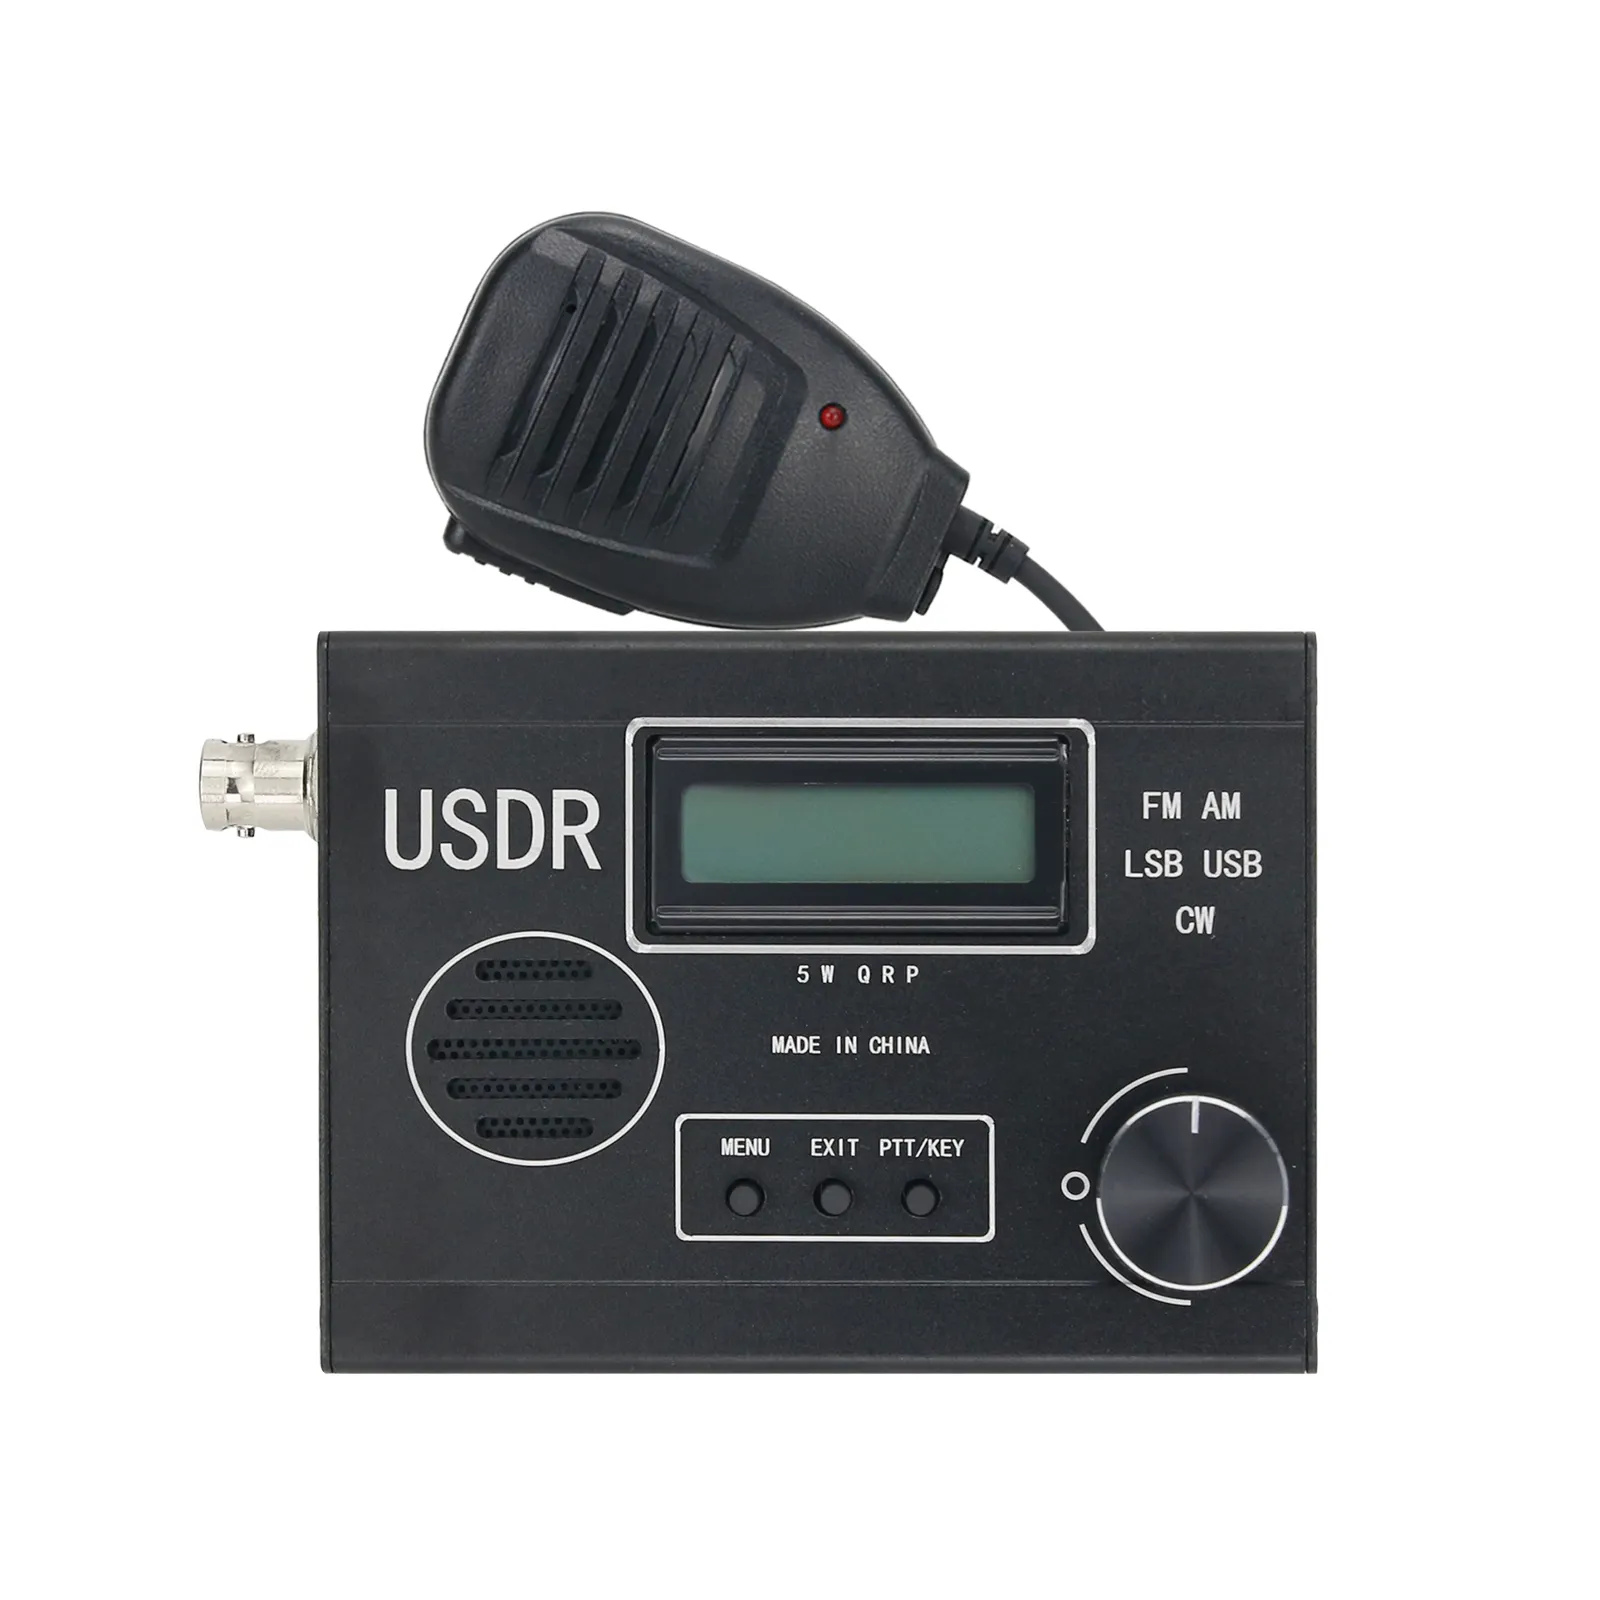 5W 8-Band SDR-Radio empfänger FM AM LSB USB CW SDR-Transceiver mit Bildschirm für USDR USDX